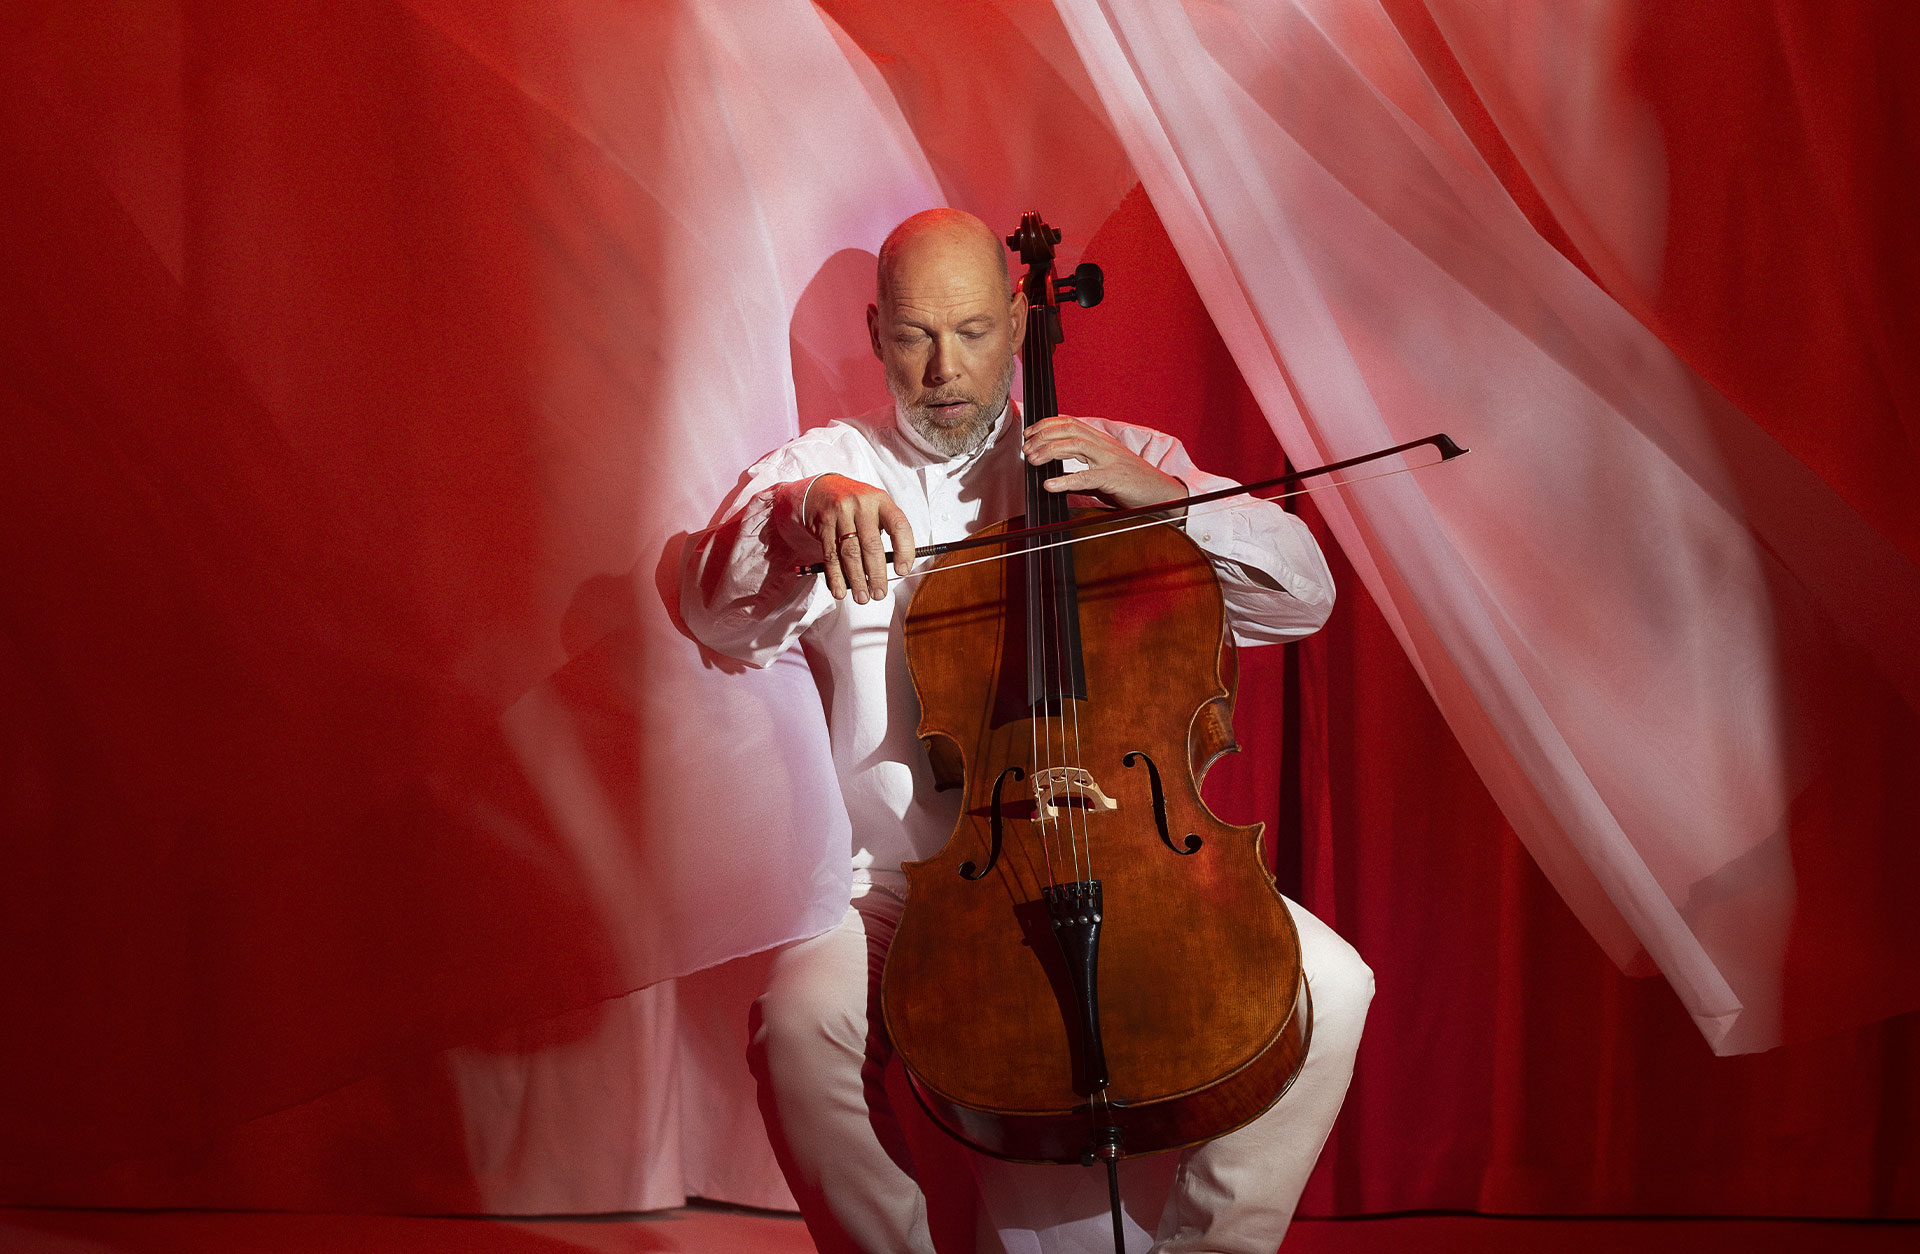 Man spelar på en cello i ett rött rum där tyg fladdrar runt honom